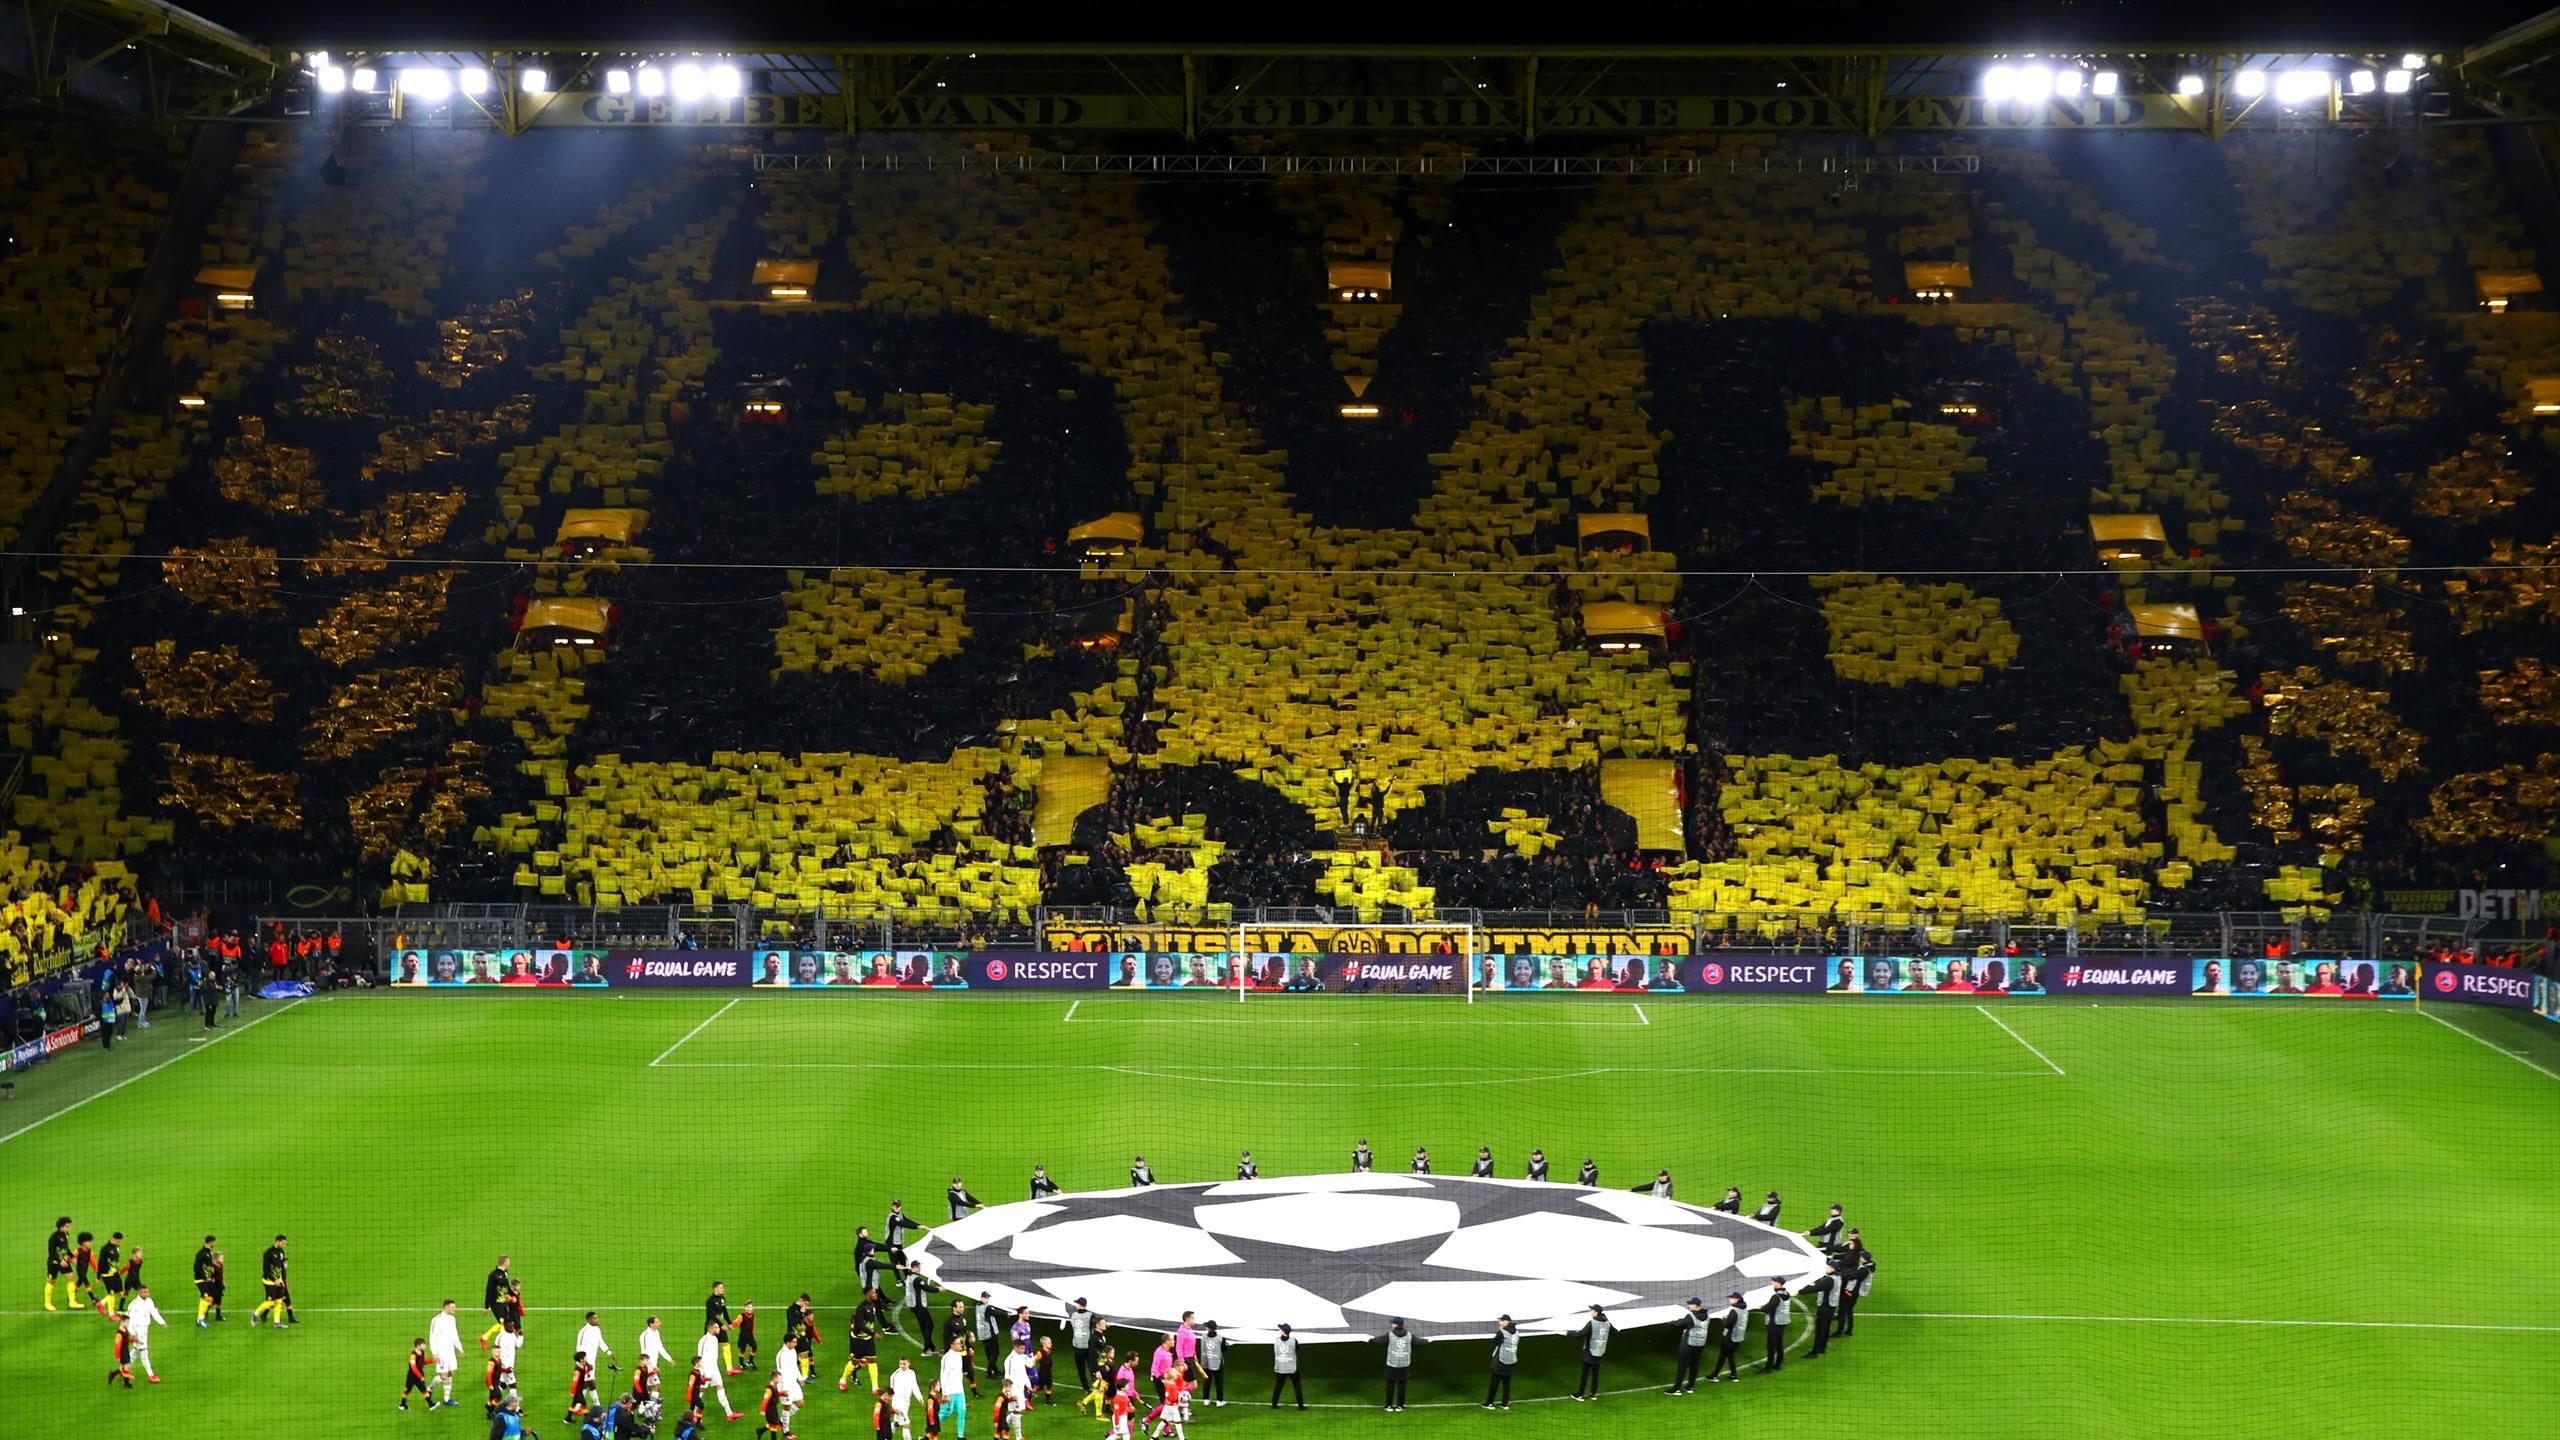 Champions League-Dortmund-Paris Saint-Germain |  Il Muro Giallo, nemico n. 1 del Paris Saint-Germain